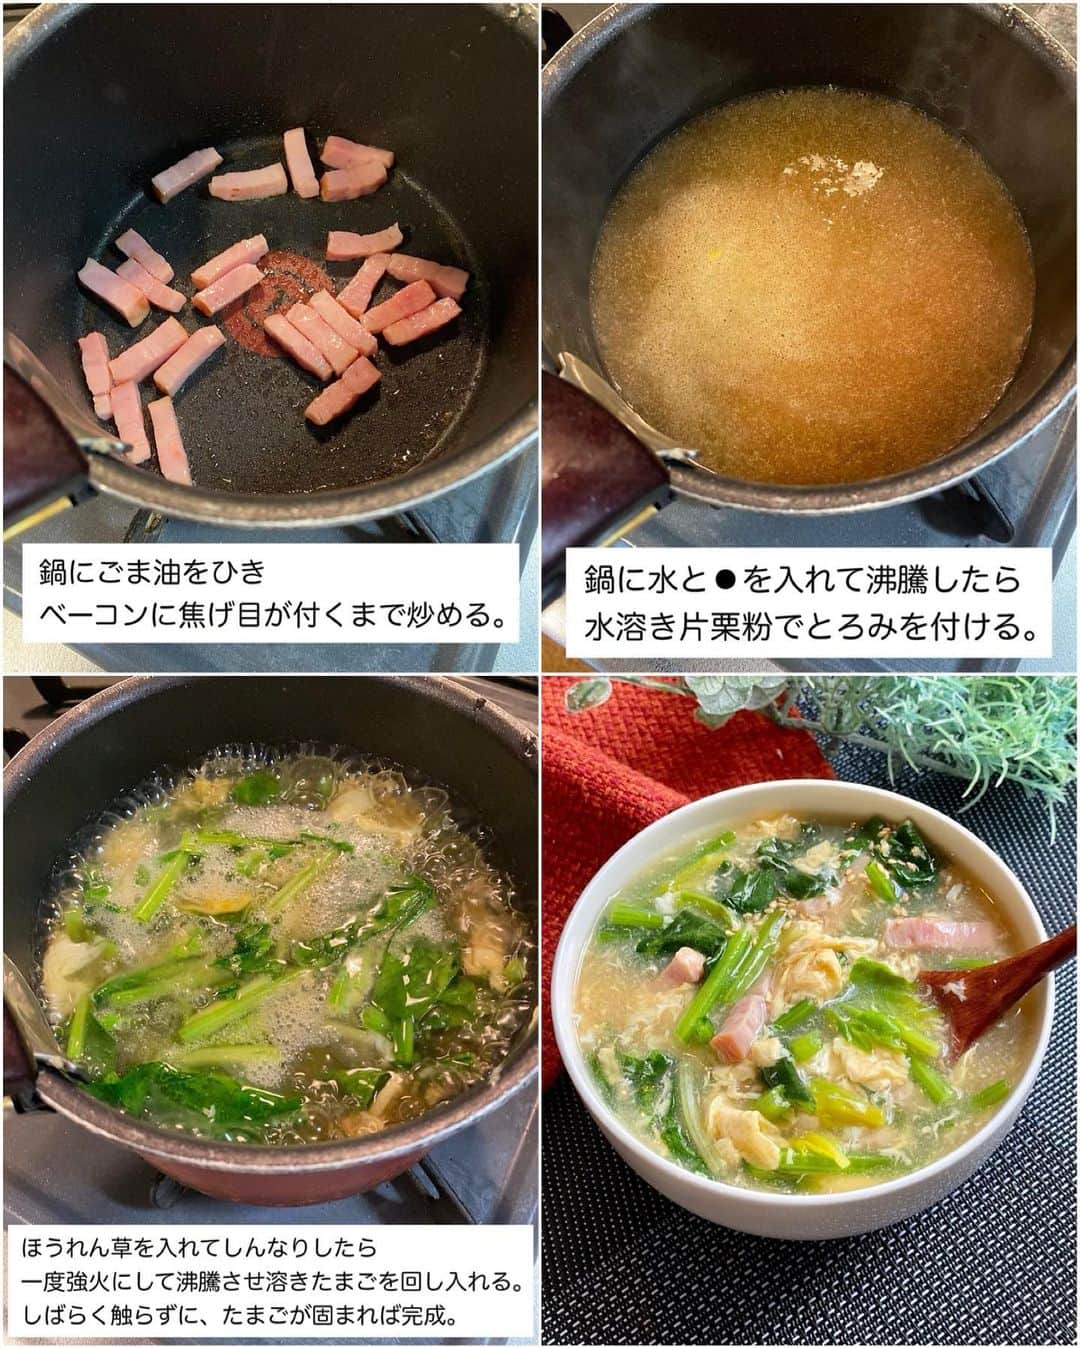 山本菜月さんのインスタグラム写真 - (山本菜月Instagram)「⁡ ⁡ ⁡ ⁡ ┈┈┈┈┈┈┈┈┈┈┈••✼ 野菜がたっぷり入った 満腹スープ🍲 ┈┈┈┈┈┈┈┈┈┈┈••✼ ⁡ ⁡ こんにちは☀︎ なつき(@zubora_meshi_ )です。 ⁡ 最近肌寒い日が続くので スープのレシピを再掲載しますね🍲 ⁡ 今日は数あるスープレシピの中で 特に保存数が多かったものを まとめてご紹介させてください♡ ⁡ とっても簡単で、温まるので 良かったら作ってみてくださいね♩ ⁡ ⁡ ⁡ ｡.ꕤ⌒⌒⌒⌒⌒⌒ꕤ⌒⌒⌒⌒⌒⌒ꕤ.｡ ⁡ ⁡ ⁡ ⁡ ☑︎ユッケジャン風スープ 【材料2人前】 にんじん 1/2本 長ねぎ 1/2本 白菜(小さめ) 1/8個 もやし 1/2袋 たまご 1個 水 500cc 小葱、白ごま 適宜 ⚫︎鶏がらスープの素 大さじ1 ⚫︎醤油 大さじ1 ⚫︎コチュジャン 大さじ1 ⚫︎味噌 小さじ2 ⚫︎砂糖 小さじ1 ⚫︎にんにくチューブ 3〜4cm ⚫︎白すりごま 大さじ2 ⁡ 【下準備】 にんじん→細切り 白菜→一口大 長ねぎ→ななめに薄切り たまご→溶いておく ⁡ 【作り方】 ①鍋に野菜全て、水、⚫︎を入れてフタをし 　野菜がクタッとするまで煮込む。 ②良く混ぜ、溶き卵を回し入れ 　卵が固まるまで加熱する。 ③器に盛り付け、小葱、白胡麻をふる。 ⁡ 【メモ】 あまさの強いコチュジャンを使用すると 辛くありません♩ 例 季錦記さん ⁡ ⁡ ⁡ ⁡ ＊＊＊ ⁡ ⁡ ⁡ ☑︎はるさめ淡々スープ 【2人分】 鶏むねひき肉 150g ニラ 1/3束 にんにく・生姜チューブ 各小さじ1/2 ⚫︎はるさめ 35g ⚫︎水 500cc ⚫︎味噌 大さじ1 ⚫︎鶏がらスープの素 大さじ1 ⚫︎コチュジャン 小さじ1 白ごま、ラー油、胡椒 適宜 ⁡ 【作り方】 ①鍋にごま油をひき、鶏むね肉(ひき肉)と 　生姜・にんにくチューブを入れて 　パラパラになるまで炒める。 ②⚫︎を入れ沸かし、アクをとりながら2分加熱する。 ③ニラをはさみで切り入れて軽く混ぜる。 ④器に盛り付け白ごま、ラー油、胡椒など 　お好みのものをトッピングする。 ⁡ 【メモ】 胸肉は合い挽き肉などでも代用可能です。 ⁡ ⁡ ⁡ ＊＊＊ ⁡ ⁡ ⁡ ☑︎とろたまスープ 【2人前】 ベーコン 50g ほうれん草 80g (1/3袋位) たまご 1〜2個 ごま油 小さじ1 水 500ml ⚫︎醤油 小さじ2 ⚫︎コンソメ 大さじ1 片栗粉 大さじ1(大さじ2の水で溶く) ⁡ 【作り方】 ①鍋にごま油をひき、ベーコン(1cm幅) 　焦げ目が付くまで炒める。 ②鍋に水、⚫︎を入れて沸騰したら 　水溶き片栗粉でとろみを付ける。 ③ほうれん草(適当な大きさ)を入れて 　しんなりしたら 　一気に強火にして沸騰させ 　ときたまごを回し入れる。 　しばらく触らず、たまごが固まったら完成。 ⁡ ⁡ ⁡ ＊＊＊ ⁡ ⁡ ⁡ ☑︎味噌キャ豚スープ 【材料2人分】 豚バラ肉 100g キャベツ 1/8玉(100gくらい) ぶなしめじ 1/4パック ごま油 小さじ2 ⚫︎水 500ml ⚫︎味噌、みりん、鶏がらスープの素 各小さじ2 ⚫︎醤油 小さじ1 白ごま、小葱 適量 ⁡ 【作り方】 ①豚バラは3cm幅 　ぶなしめじは石づきをとり 　キャベツは一口大に切る。 ②鍋にごま油をひき、食材を全て入れたら 　全体がしんなりするまで炒める。 ③⚫︎を入れ一煮立ちさせて完成。 　器に盛り付け、お好みでごまと小葱をふる。 ⁡ ⁡ ⁡ ｡.ꕤ⌒⌒⌒⌒⌒⌒ꕤ⌒⌒⌒⌒⌒⌒ꕤ.｡ ⁡ ⁡ 最後までご覧頂きありがとうございます。 是非、食レポを聞かせてくださると嬉しいです♡ ⁡ ＊NATSU KITCHEN ＊」5月10日 8時59分 - zubora_meshi_